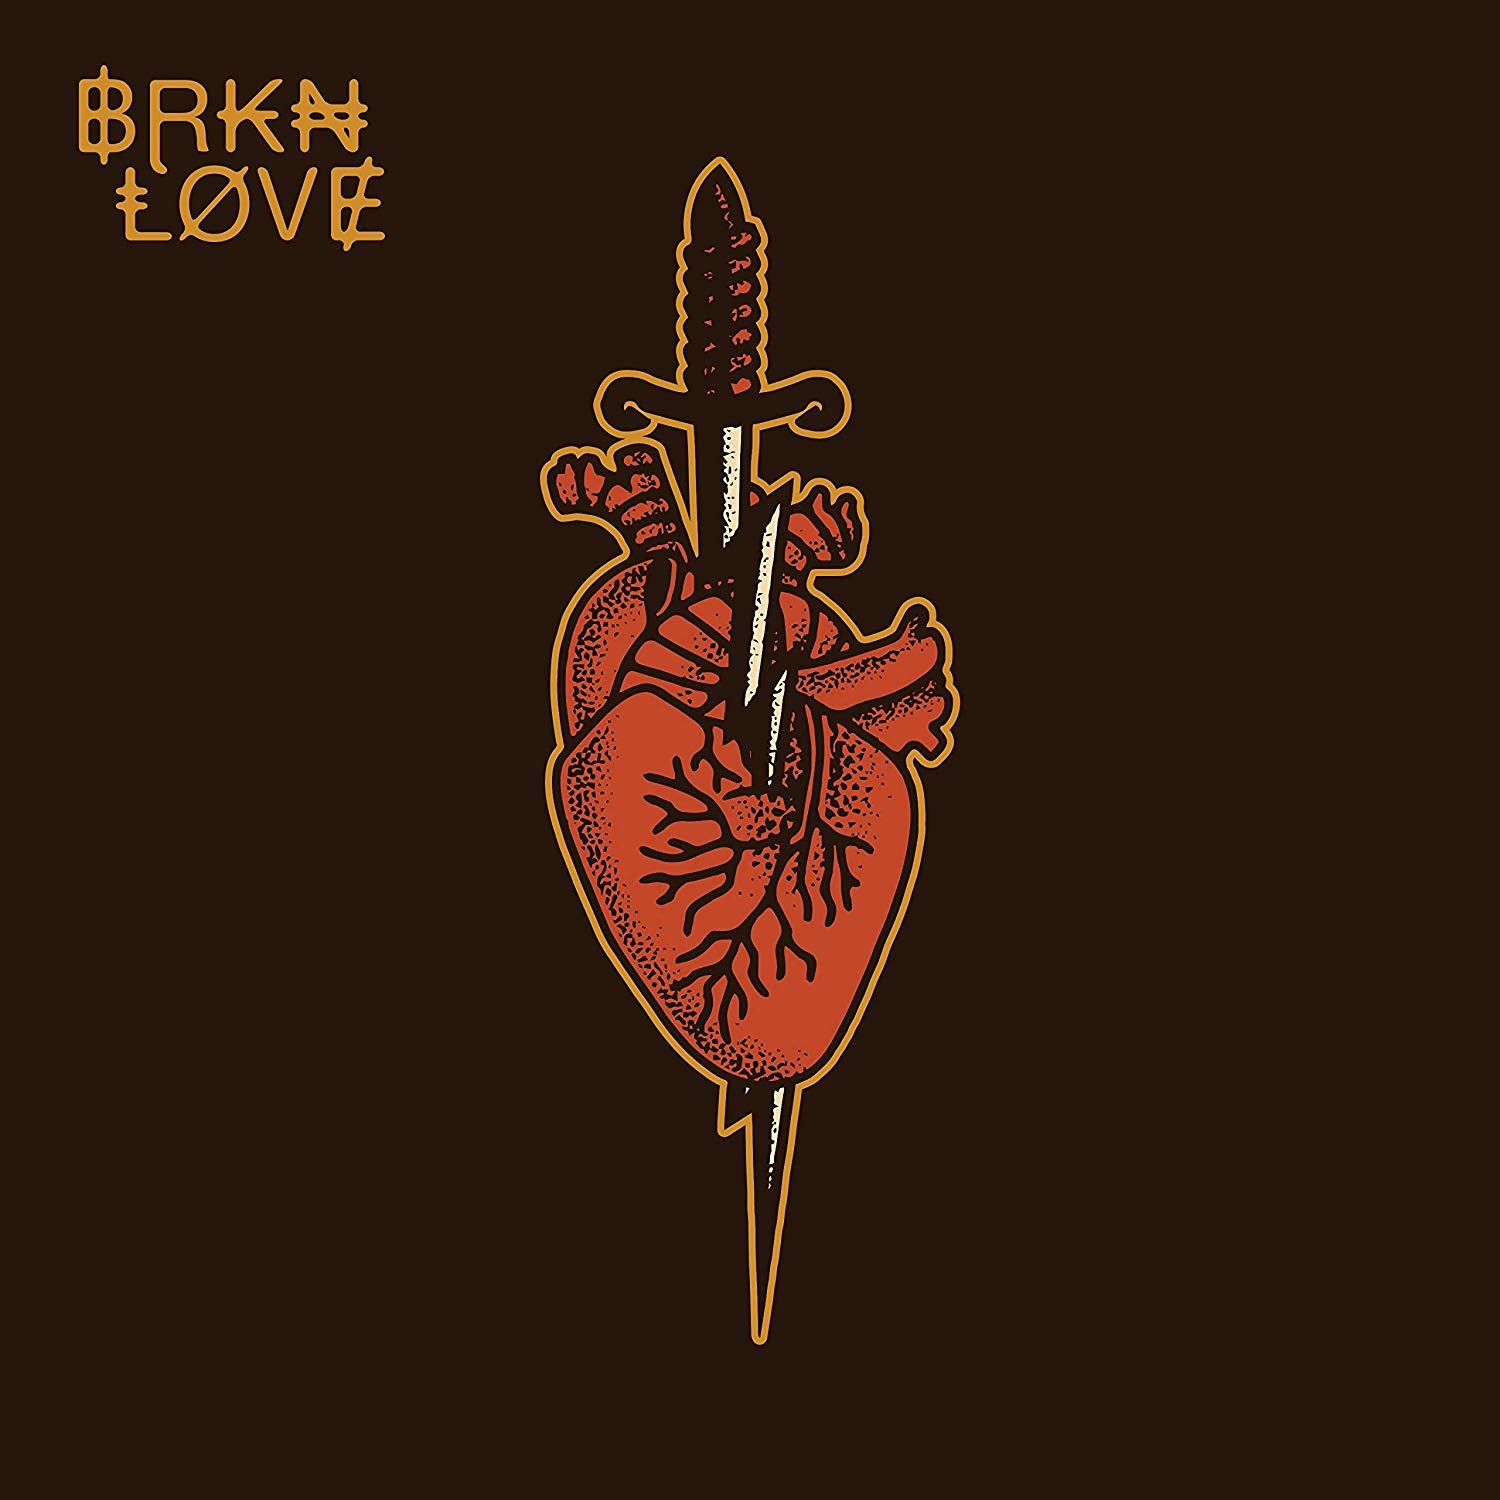 River brkn love. BRKN Love. BRKN Love Band. BRKN Love River обложка.